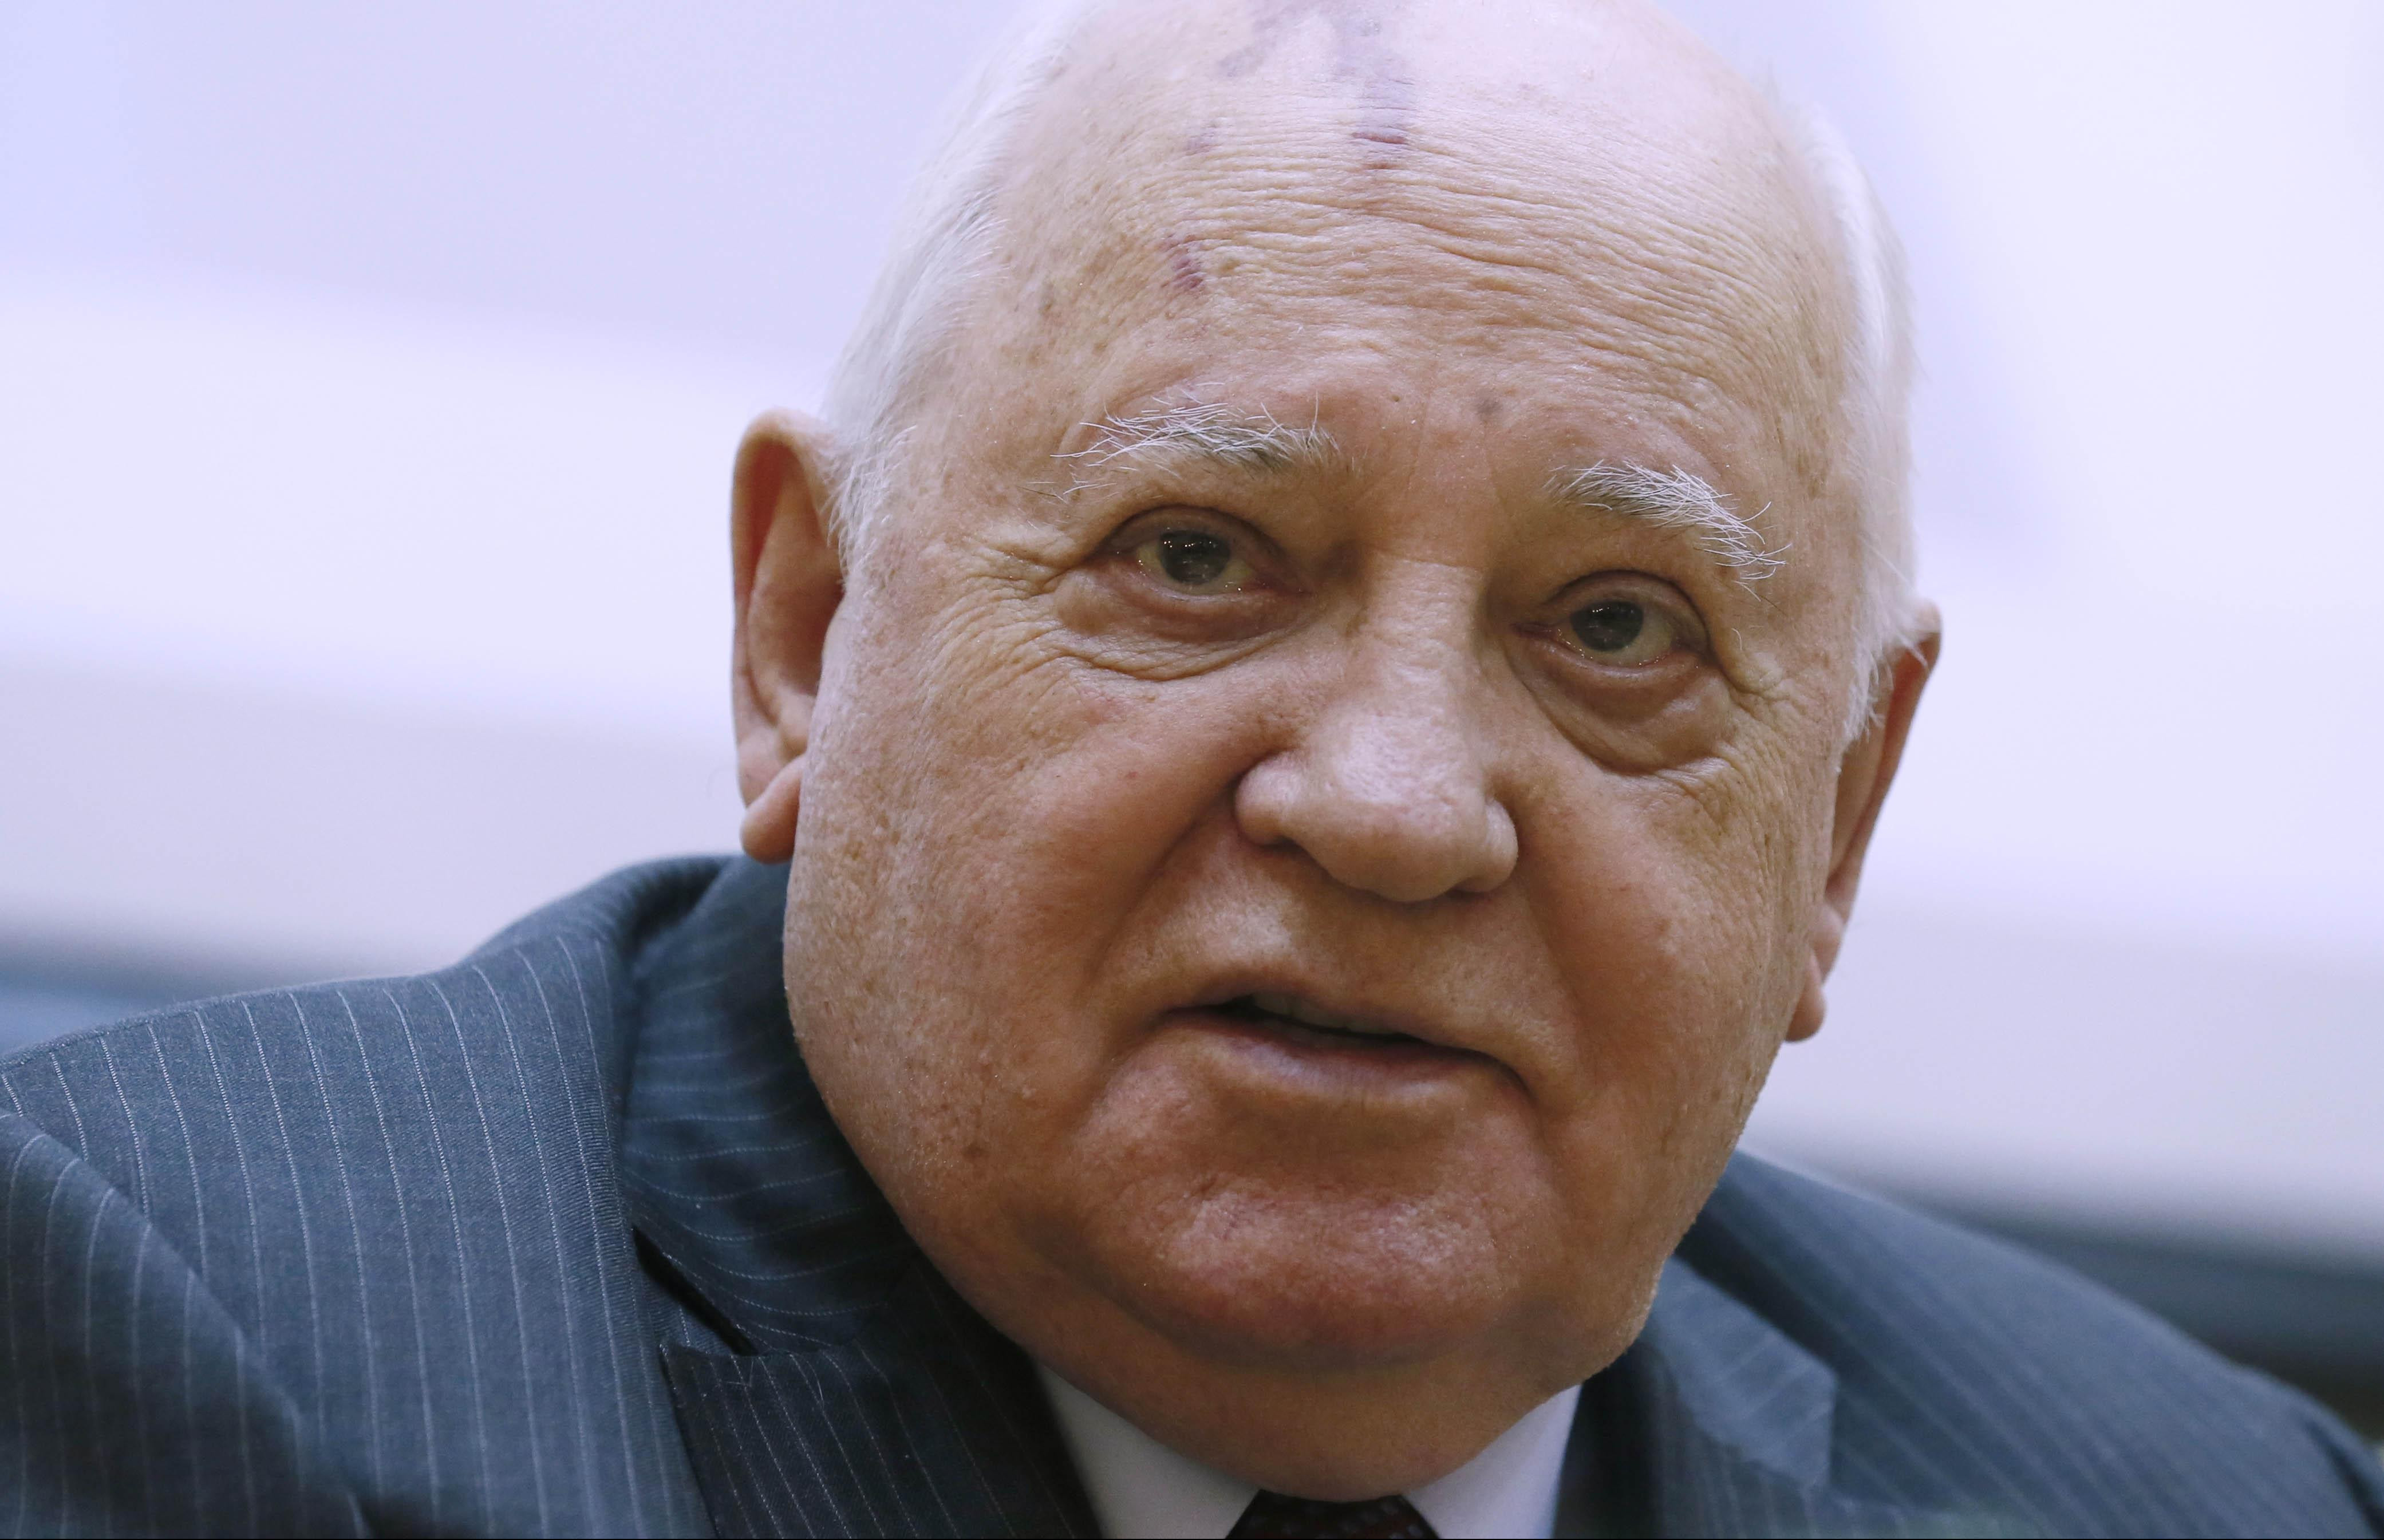 ONI HOĆE VOJNU SUPERIORNOST, A TO JE NEMOGUĆE! Gorbačov kritikuje SAD i upozorava: TRKA U NAORUŽANJU VODI U ANARHIJU!